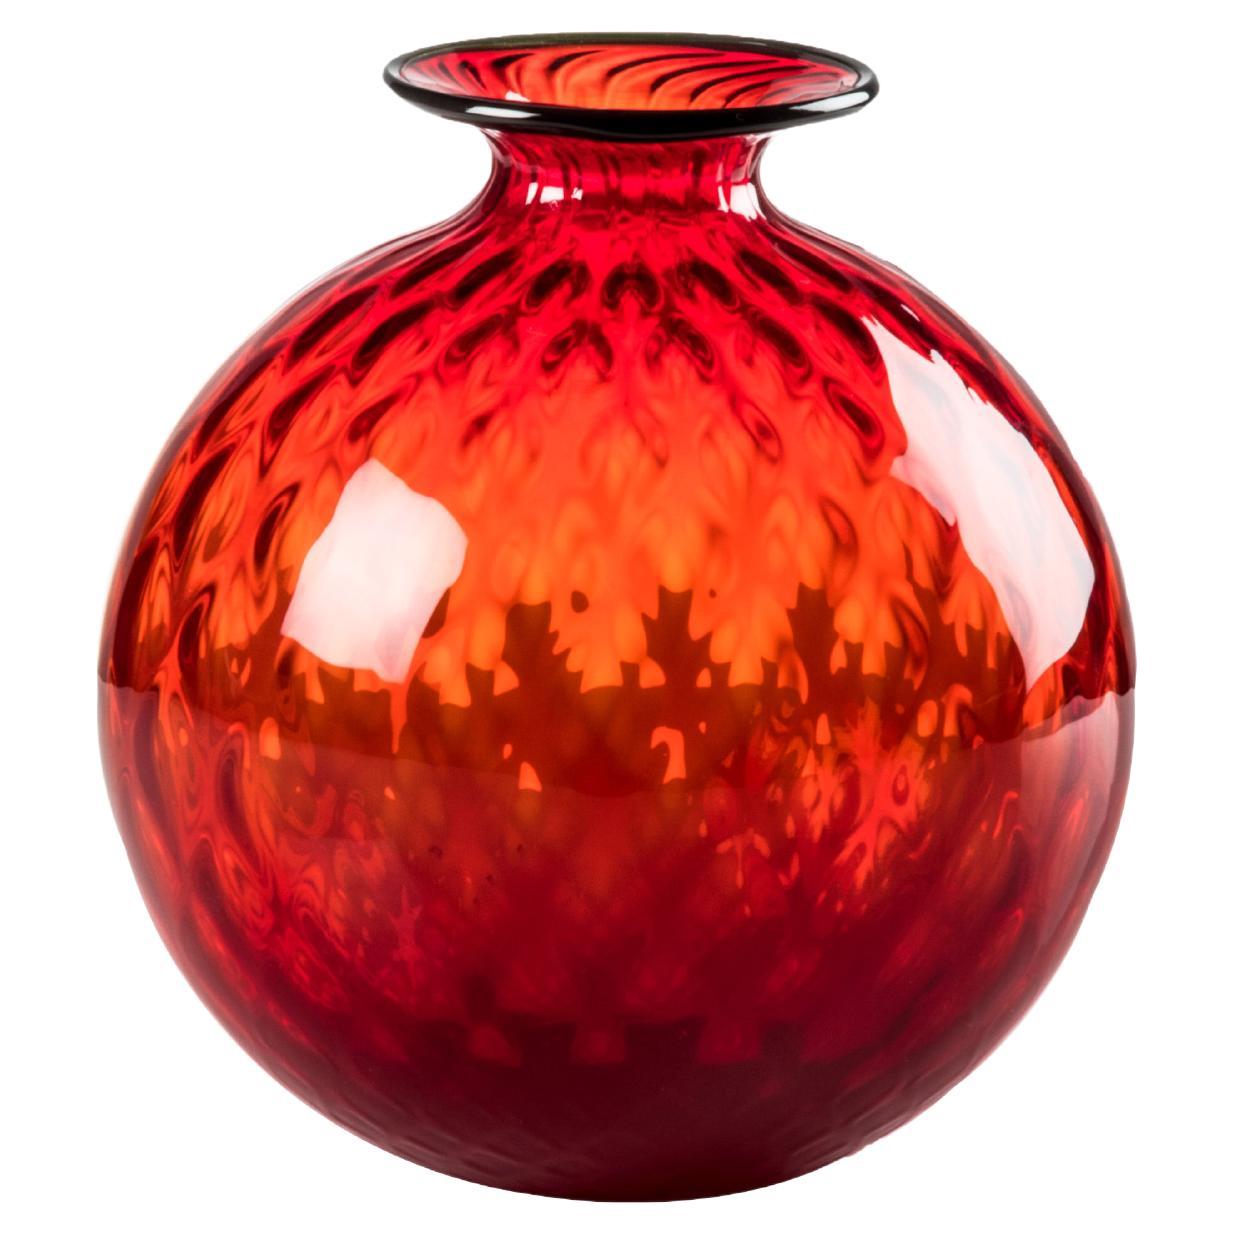 Venini Monofiore Balloton Small Vase in Red Apple-Green Thread Murano Glass For Sale